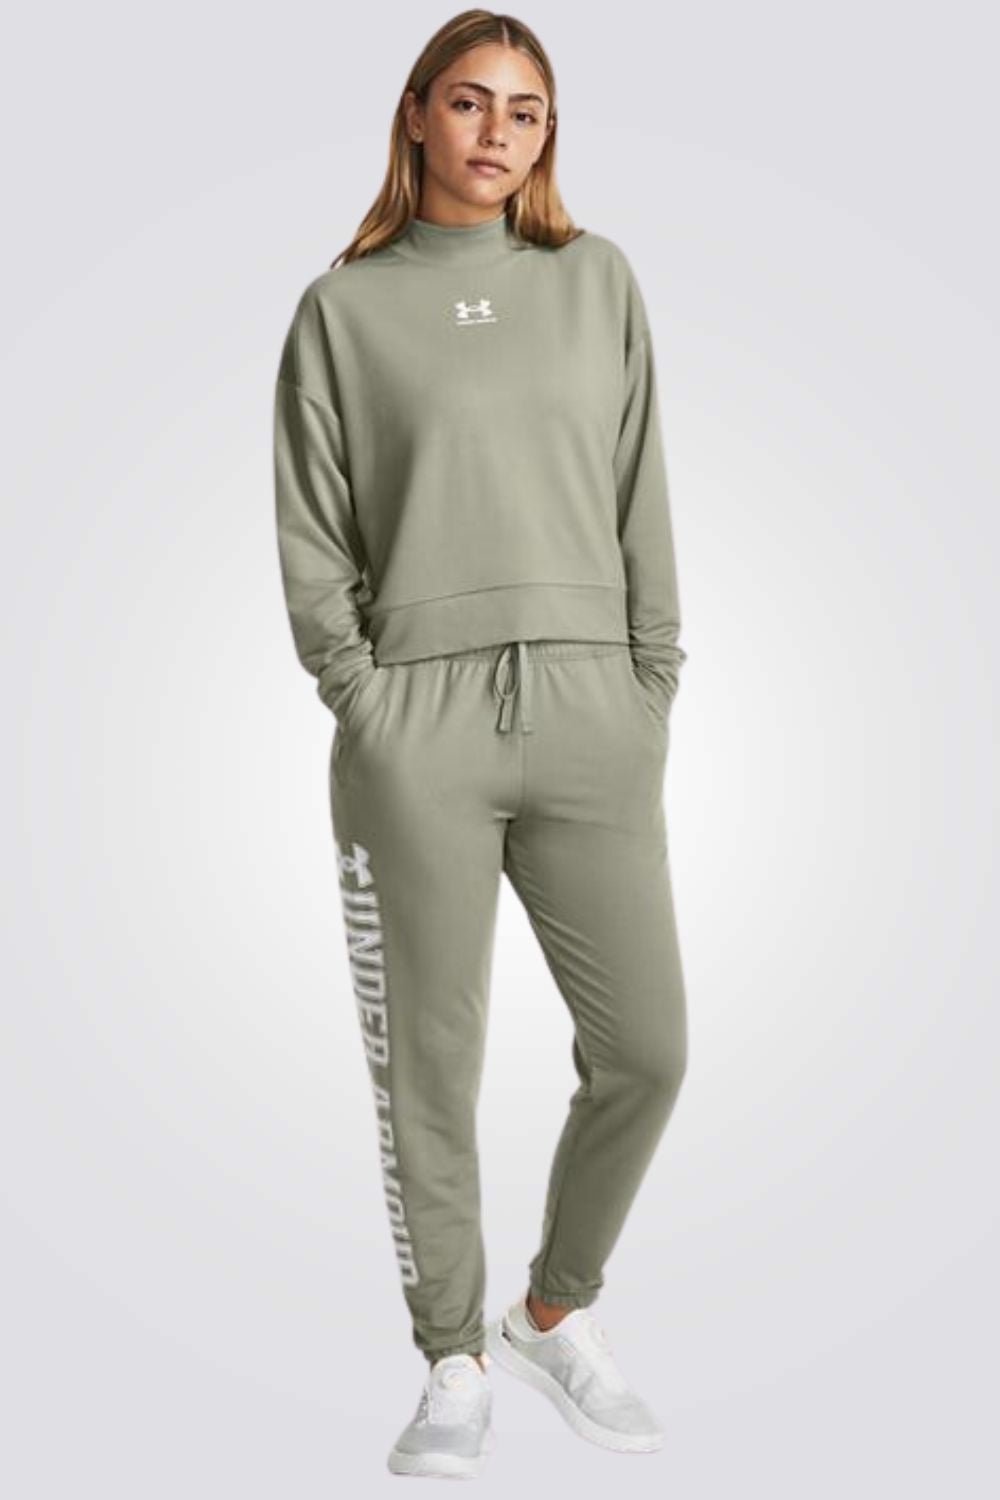 UNDER ARMOUR - חולצת ספורט ארוכה לנשים בצבע ירוק - MASHBIR//365